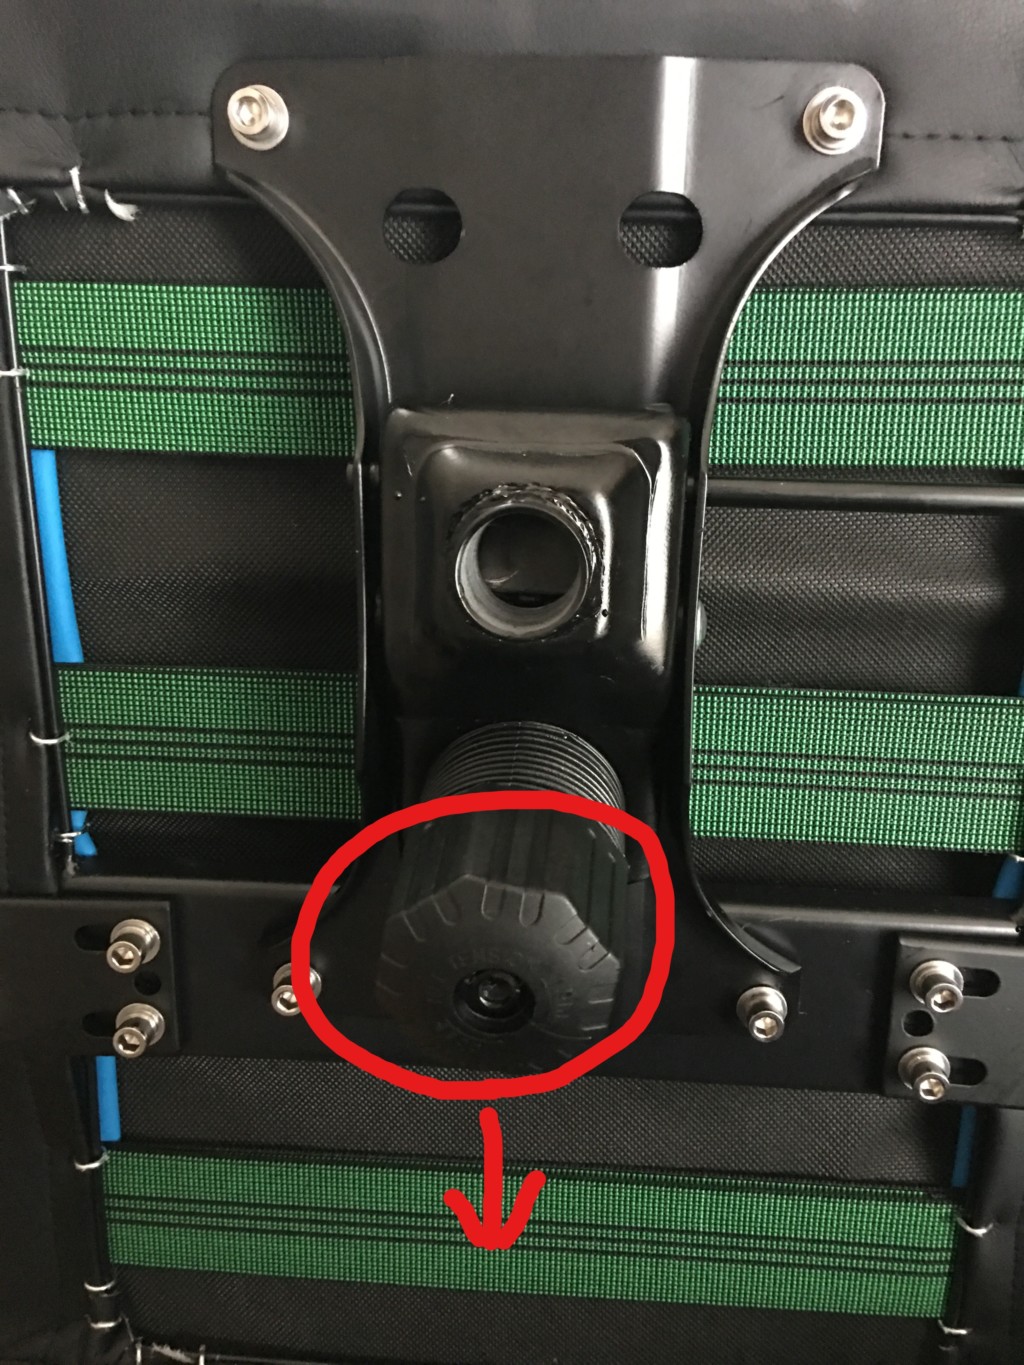 シリンダー固定台のロッキング調整ノズル側に矢印が付いているのでその矢印の向きが背もたれと逆向きになるようにネジで座部と固定する